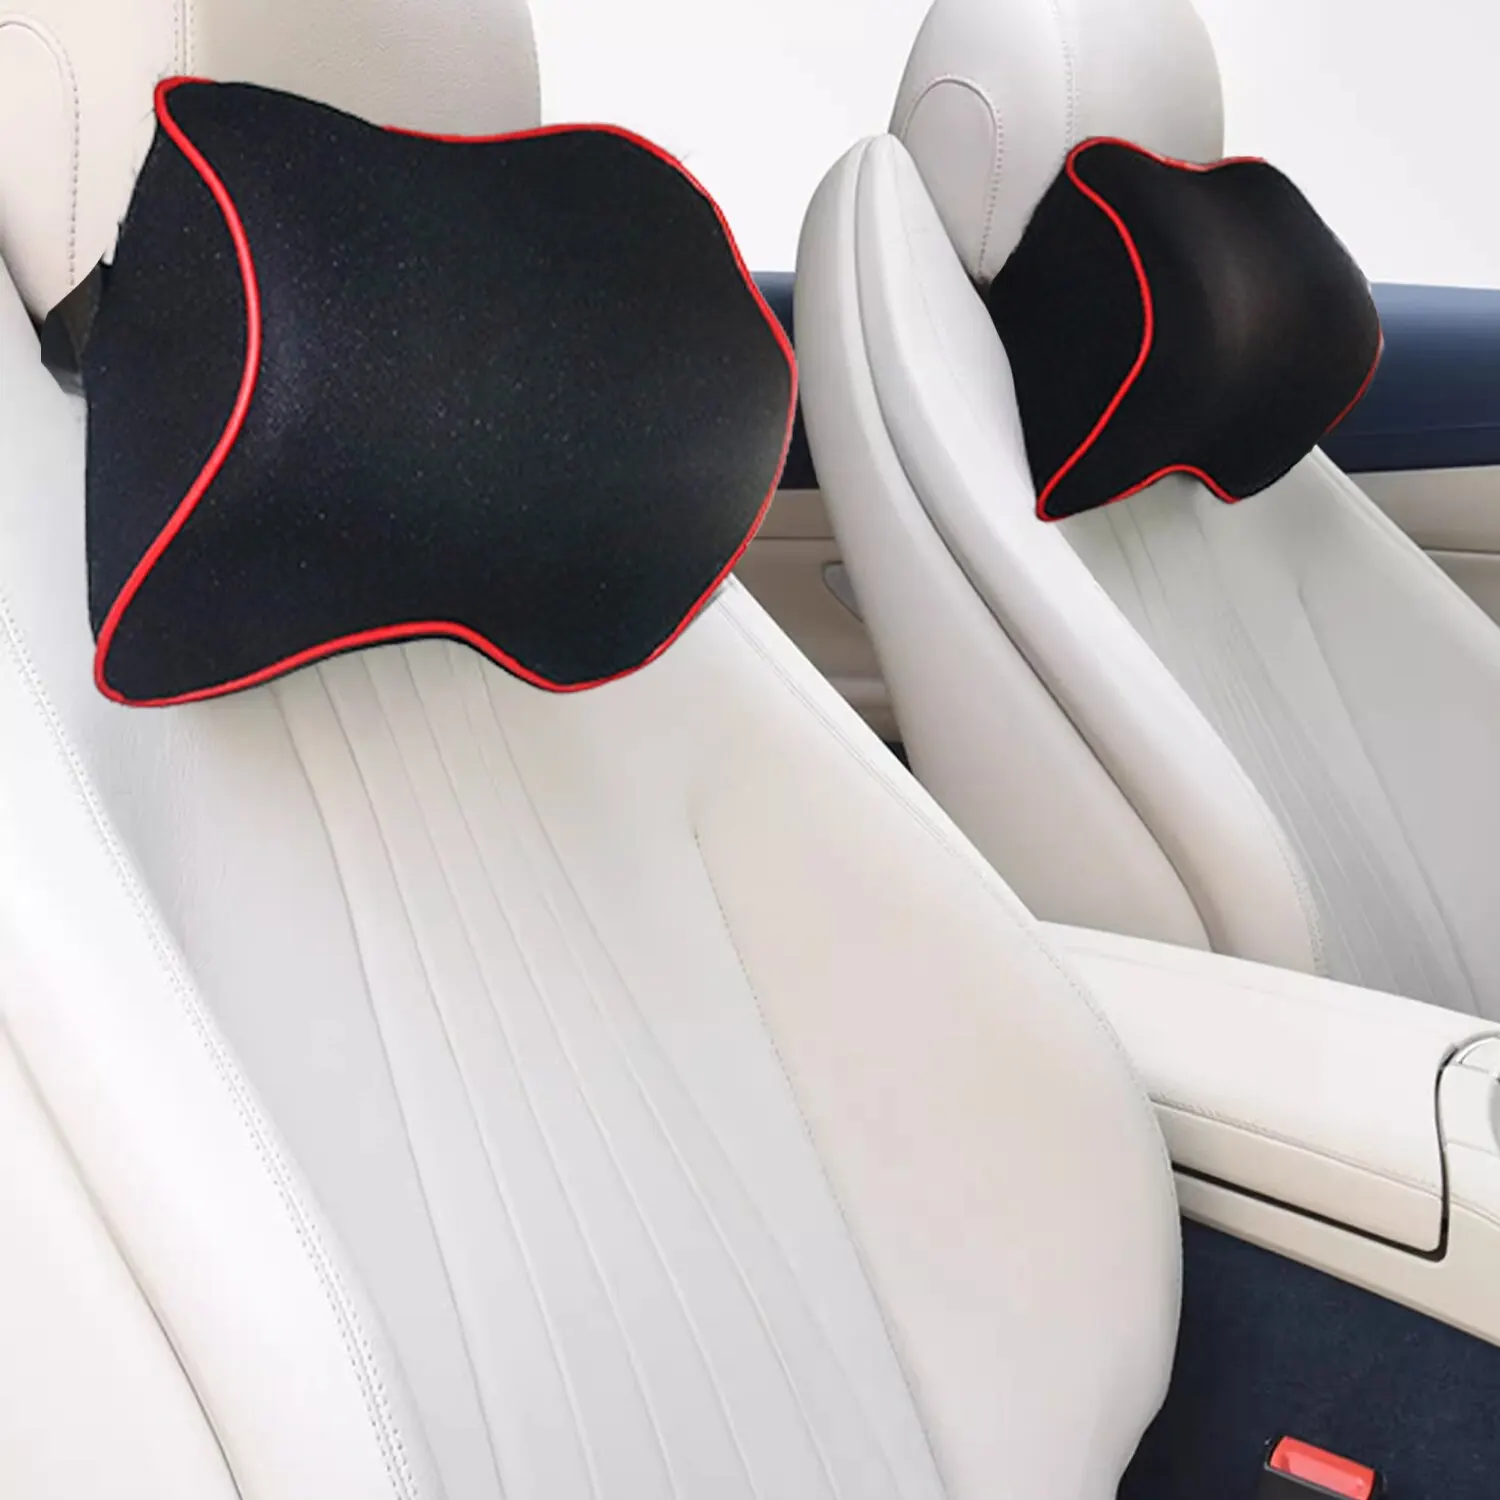 1buc Masina Gât Tetiera Perna Accesorii Pernă Scaun Auto Pentru Spătar și Pernă Tesla Model 3 Accesorii Auto Perna